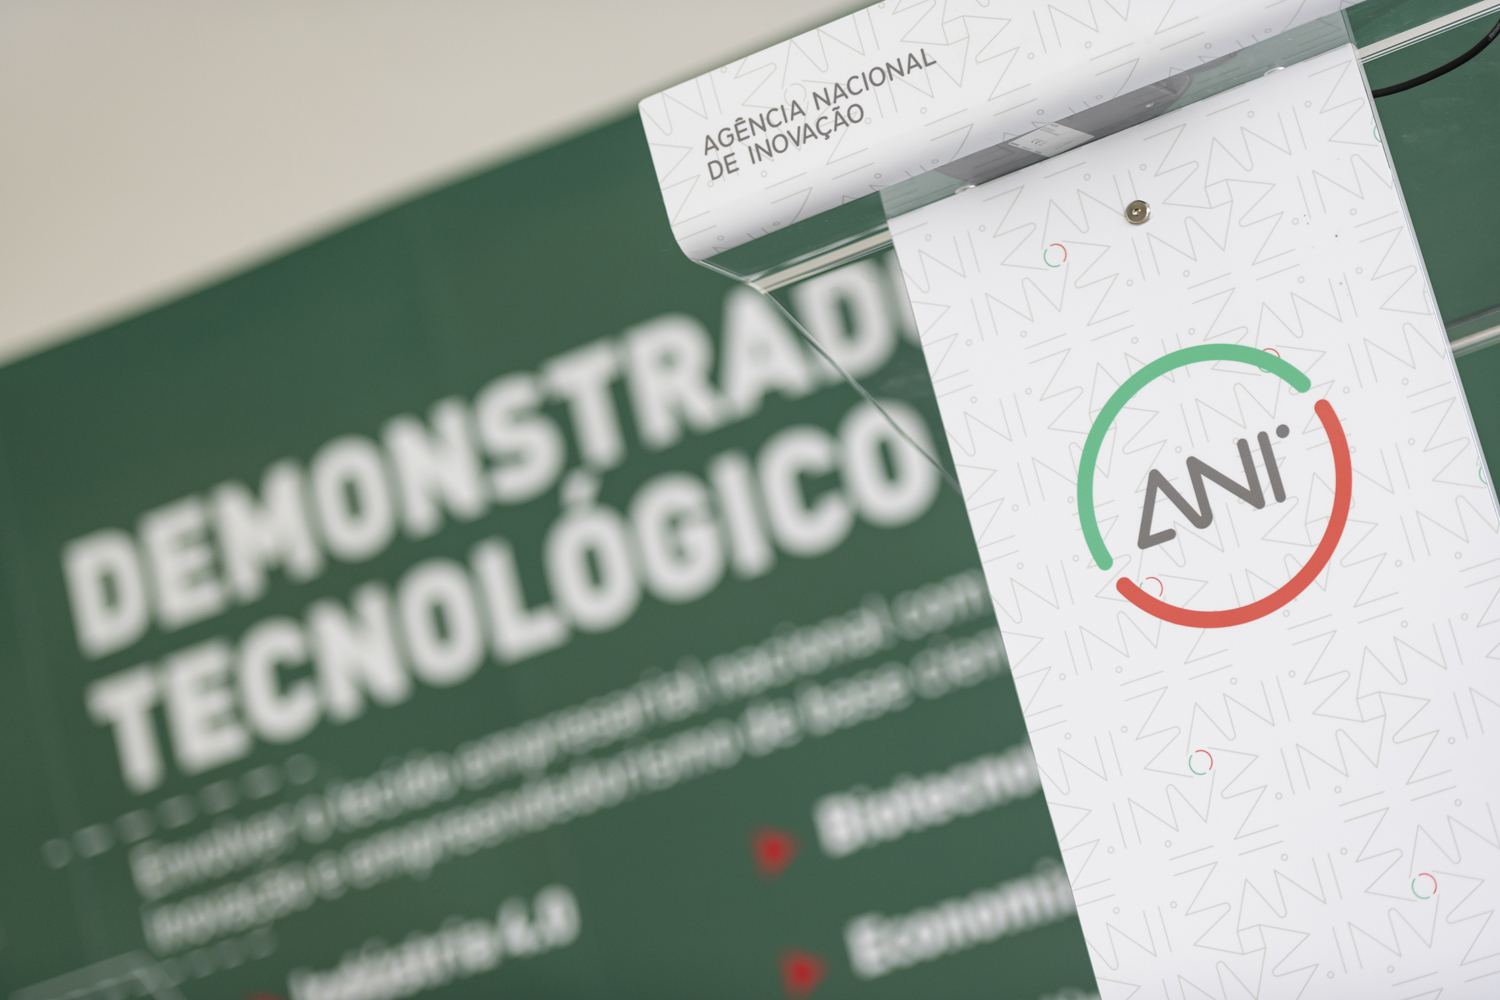 Reportagem: AIBILI apresenta transferência de tecnologia em saúde no 4.º Demonstrador Tecnológico ANI